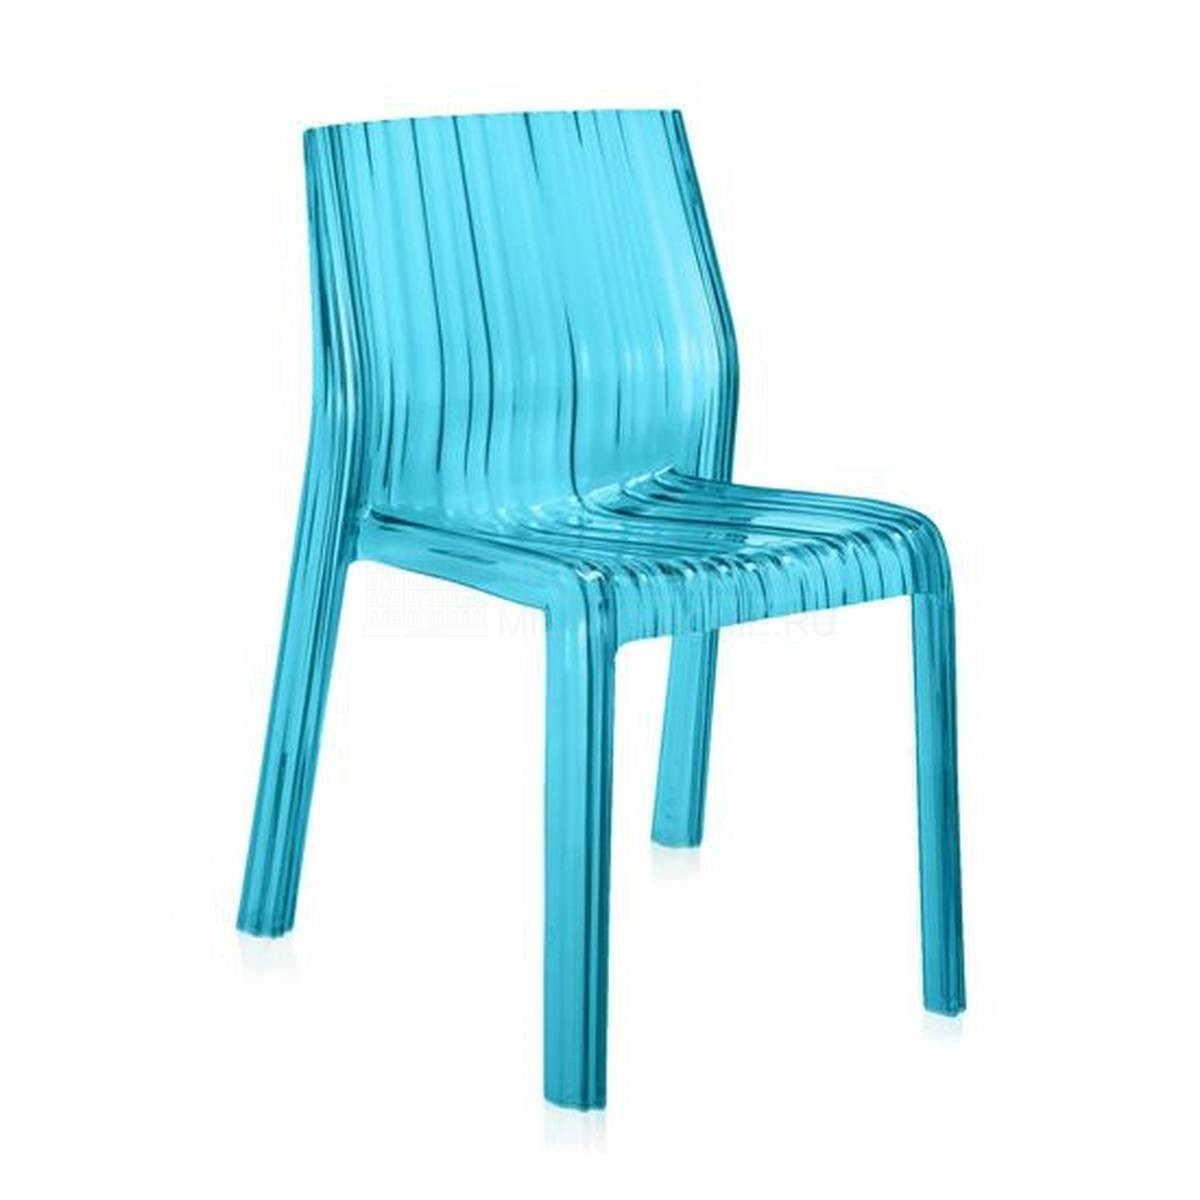 Металлический / Пластиковый стул Frilly из Италии фабрики KARTELL